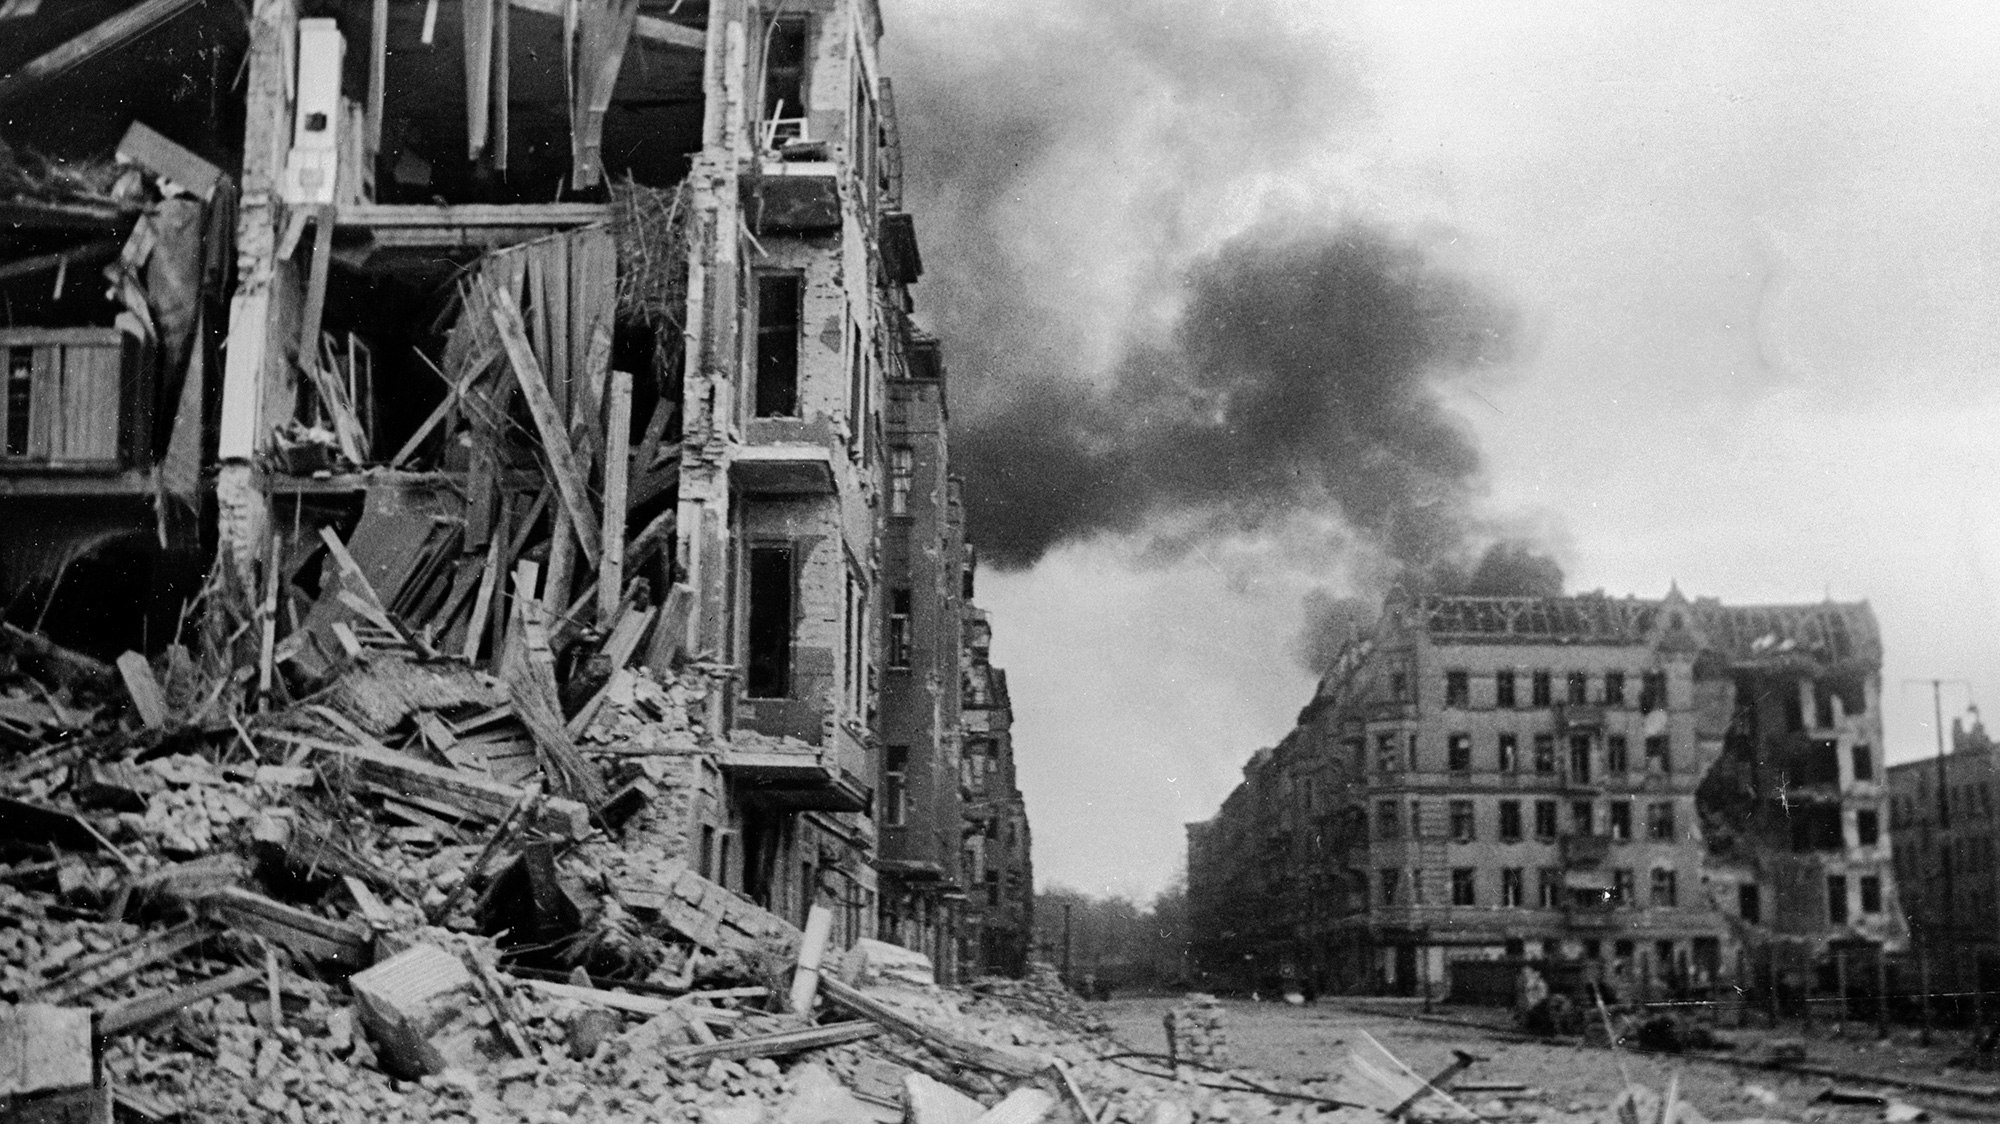 Вид на улицу с разрушенными домами во время боев в Берлине — военное фото